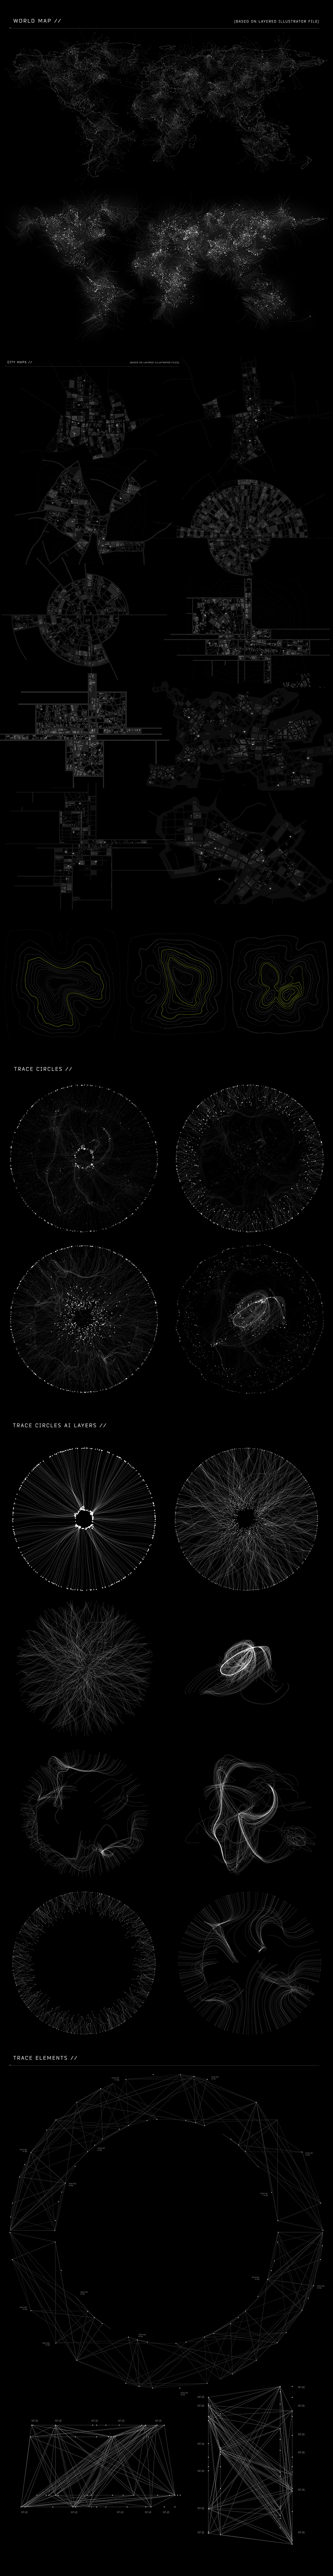 500+高科技图标信息科幻人物UI合集包（1631）图层云17